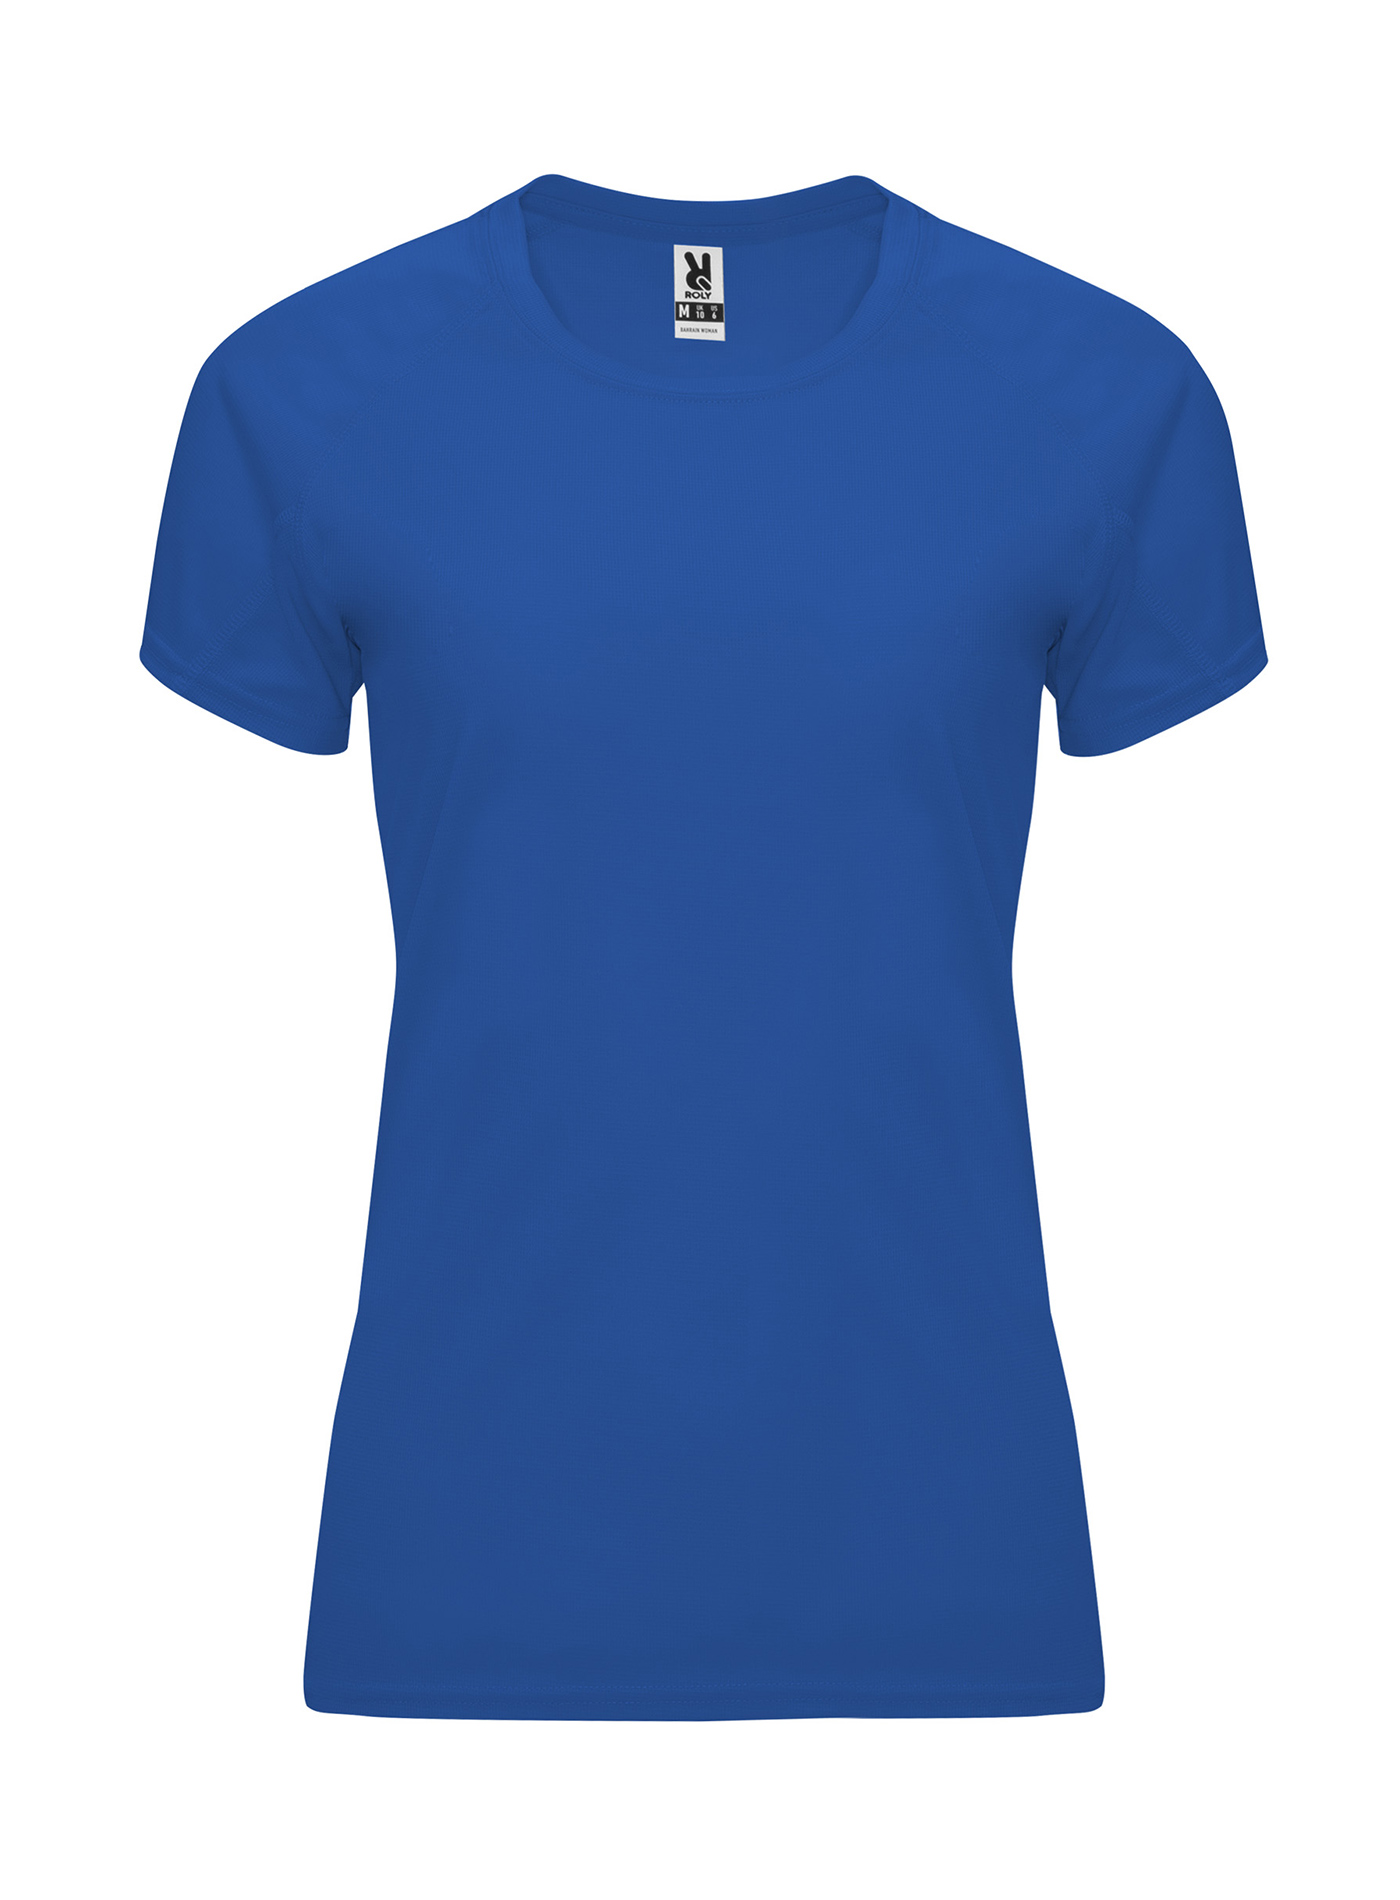 Dámské sportovní tričko Roly Bahrain - královská modrá S